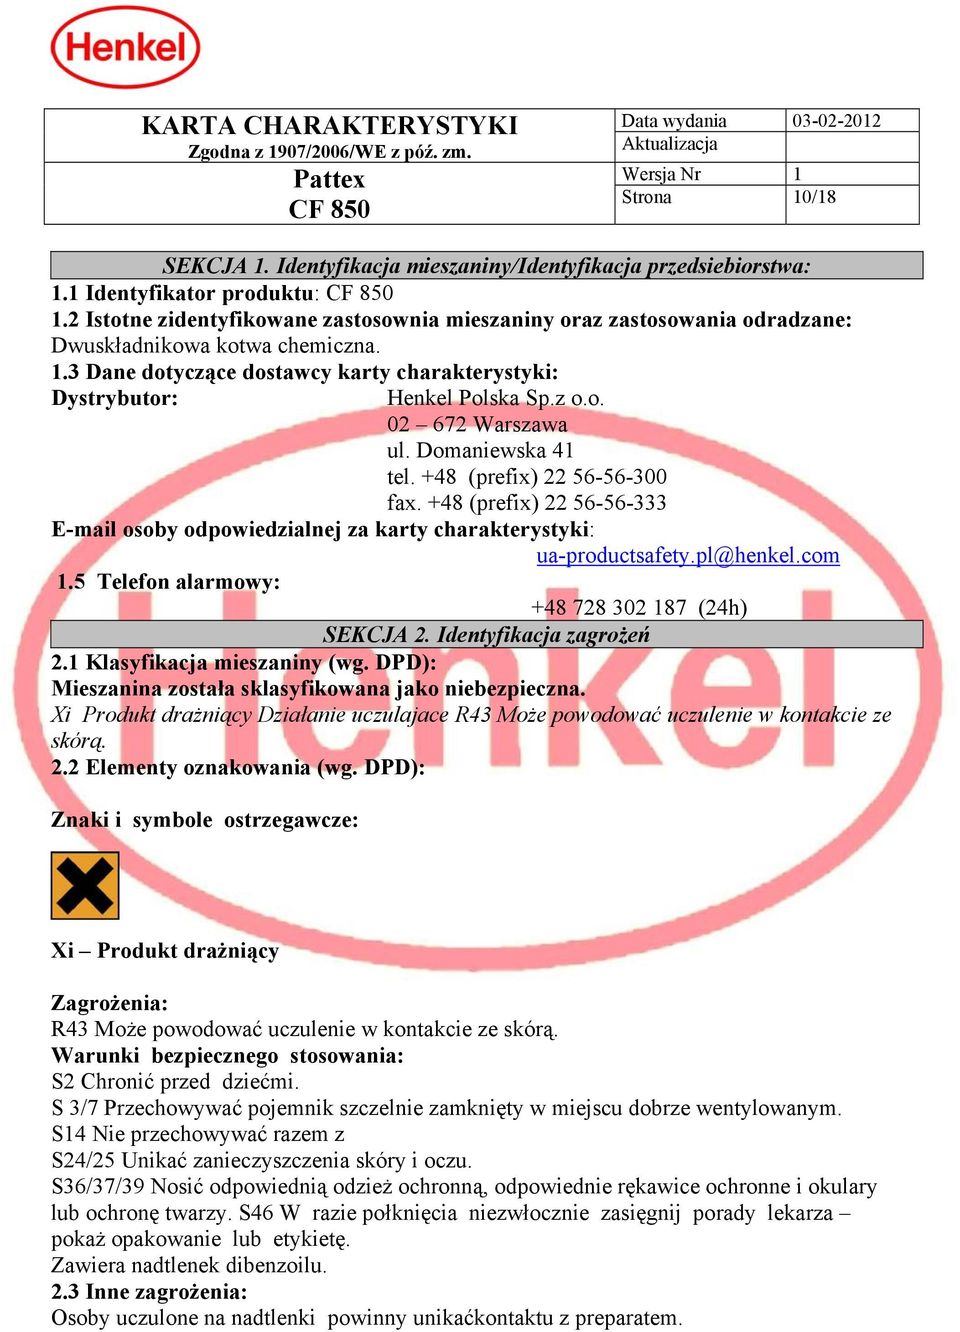 Domaniewska 41 tel. +48 (prefix) 22 56-56-300 fax. +48 (prefix) 22 56-56-333 E-mail osoby odpowiedzialnej za karty charakterystyki: ua-productsafety.pl@henkel.com 1.